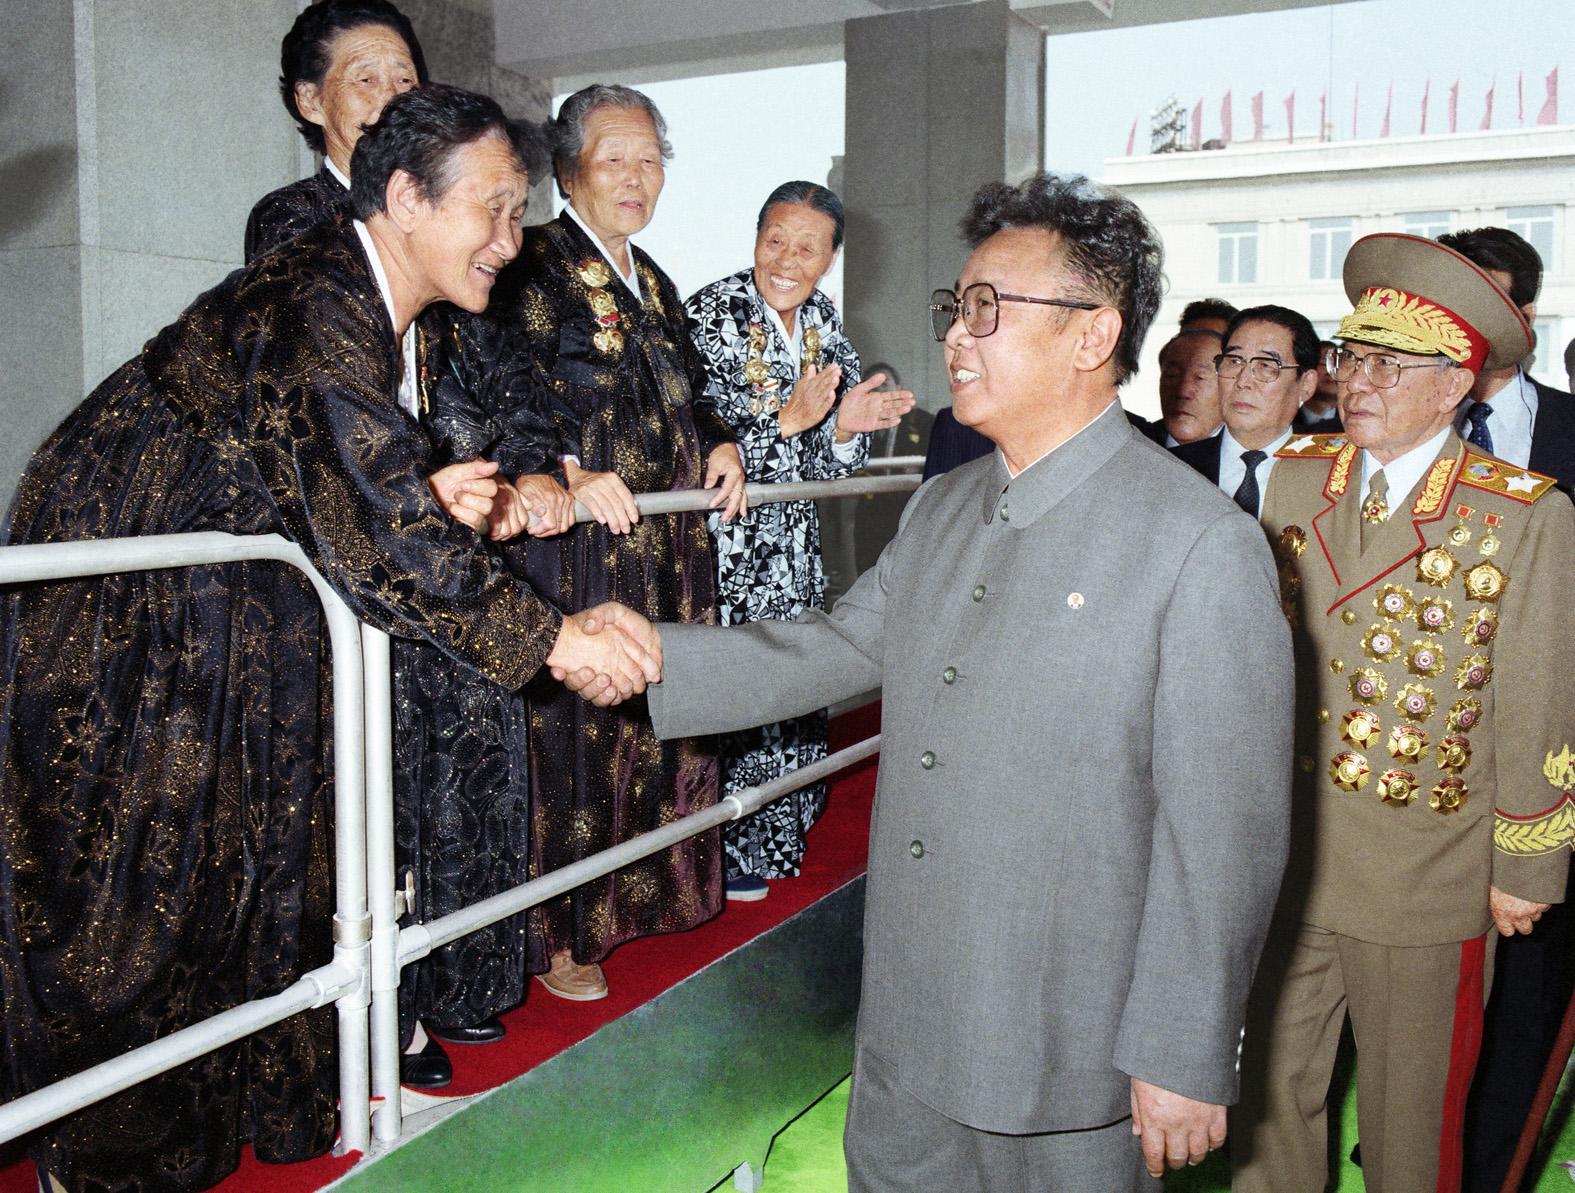  سر نجاح سياسة القائد كيم جونغ إيل